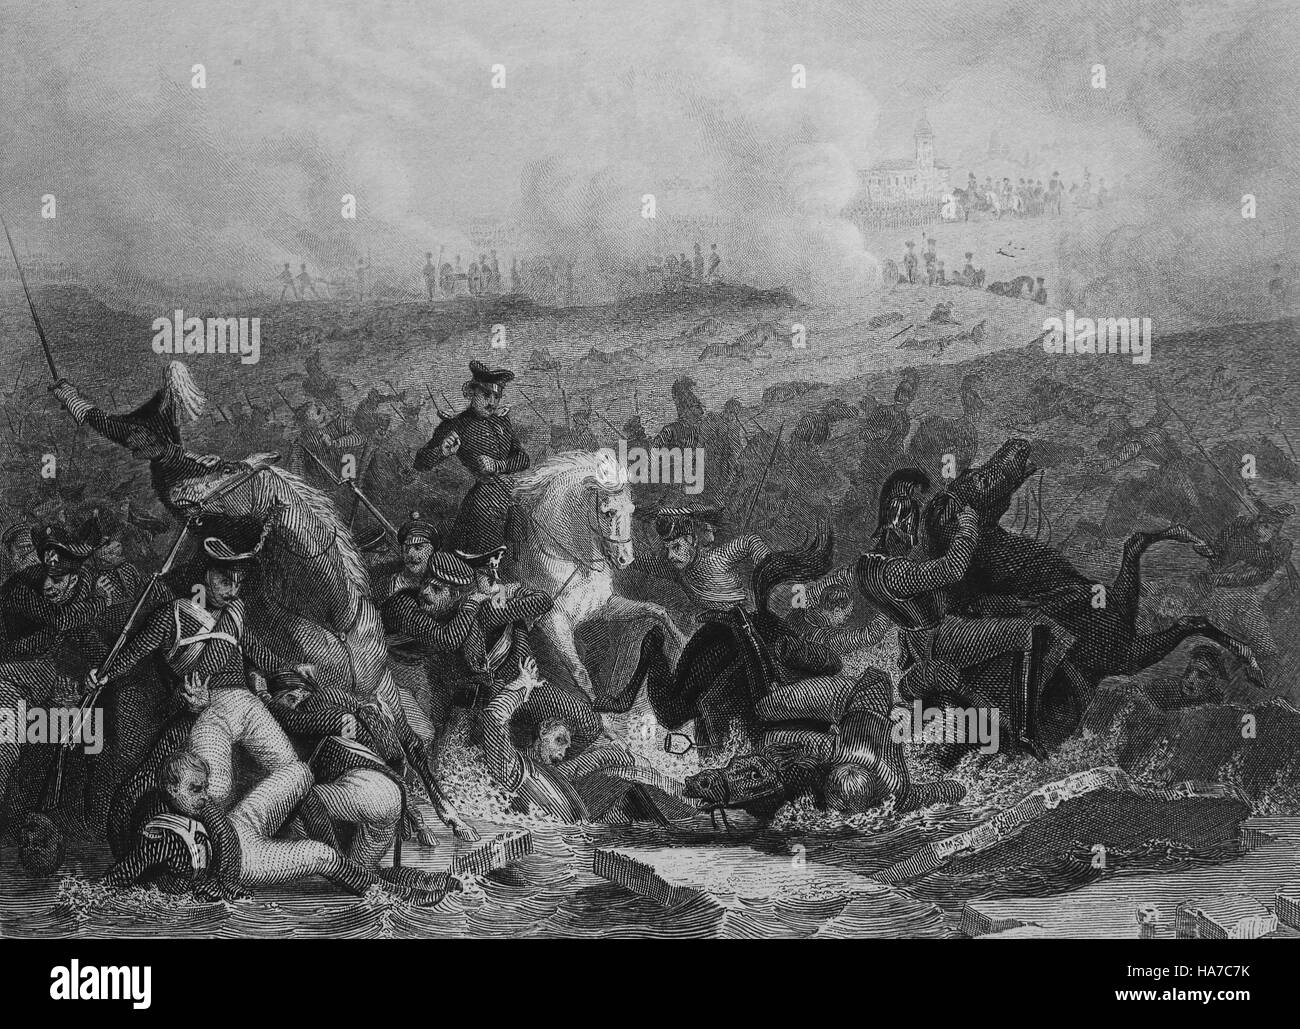 Schlacht von Austerlitz oder Schlacht der 3 Kaiser. 2 Dezember 1805. Napoleonische Kriege. Gravur. des 19. Jahrhunderts. Stockfoto